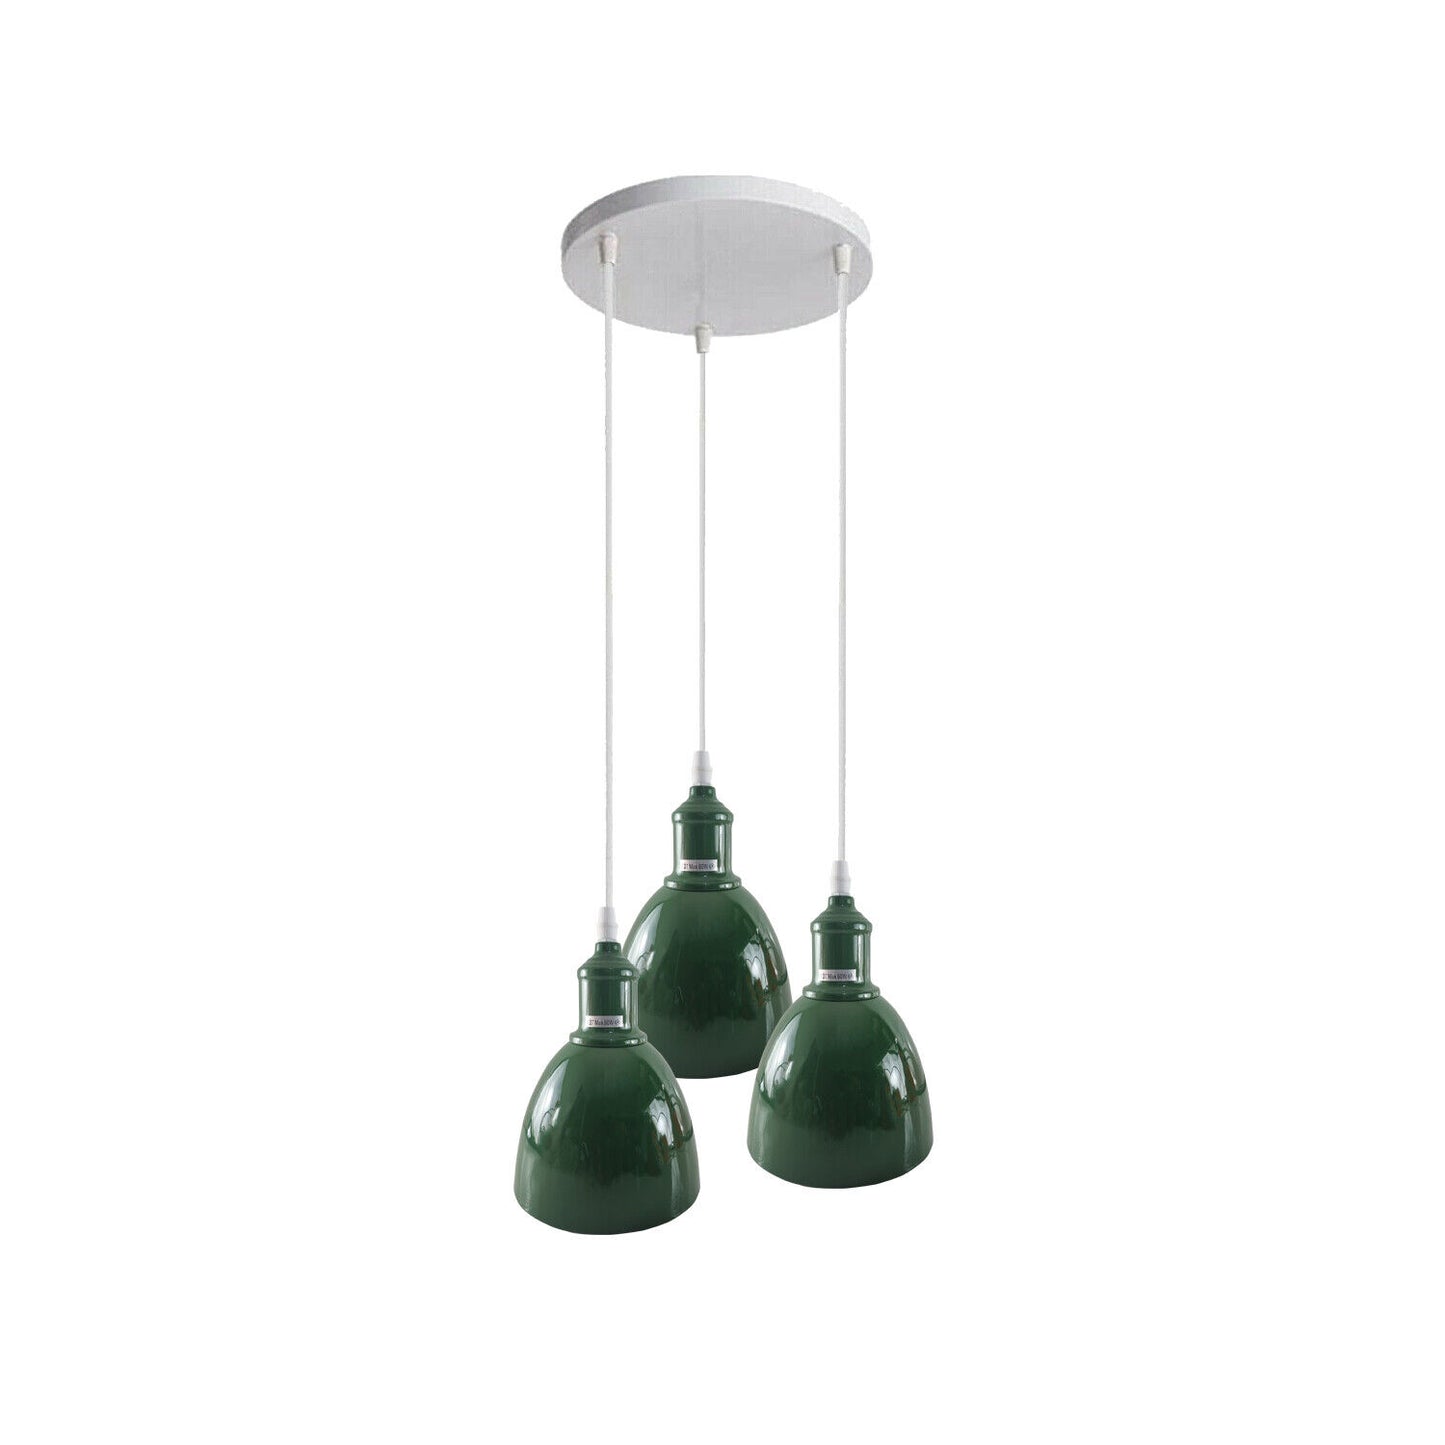 Industrielampen Küchenlampen Pendelleuchte 3 Flammig 15 cm Grün~2501